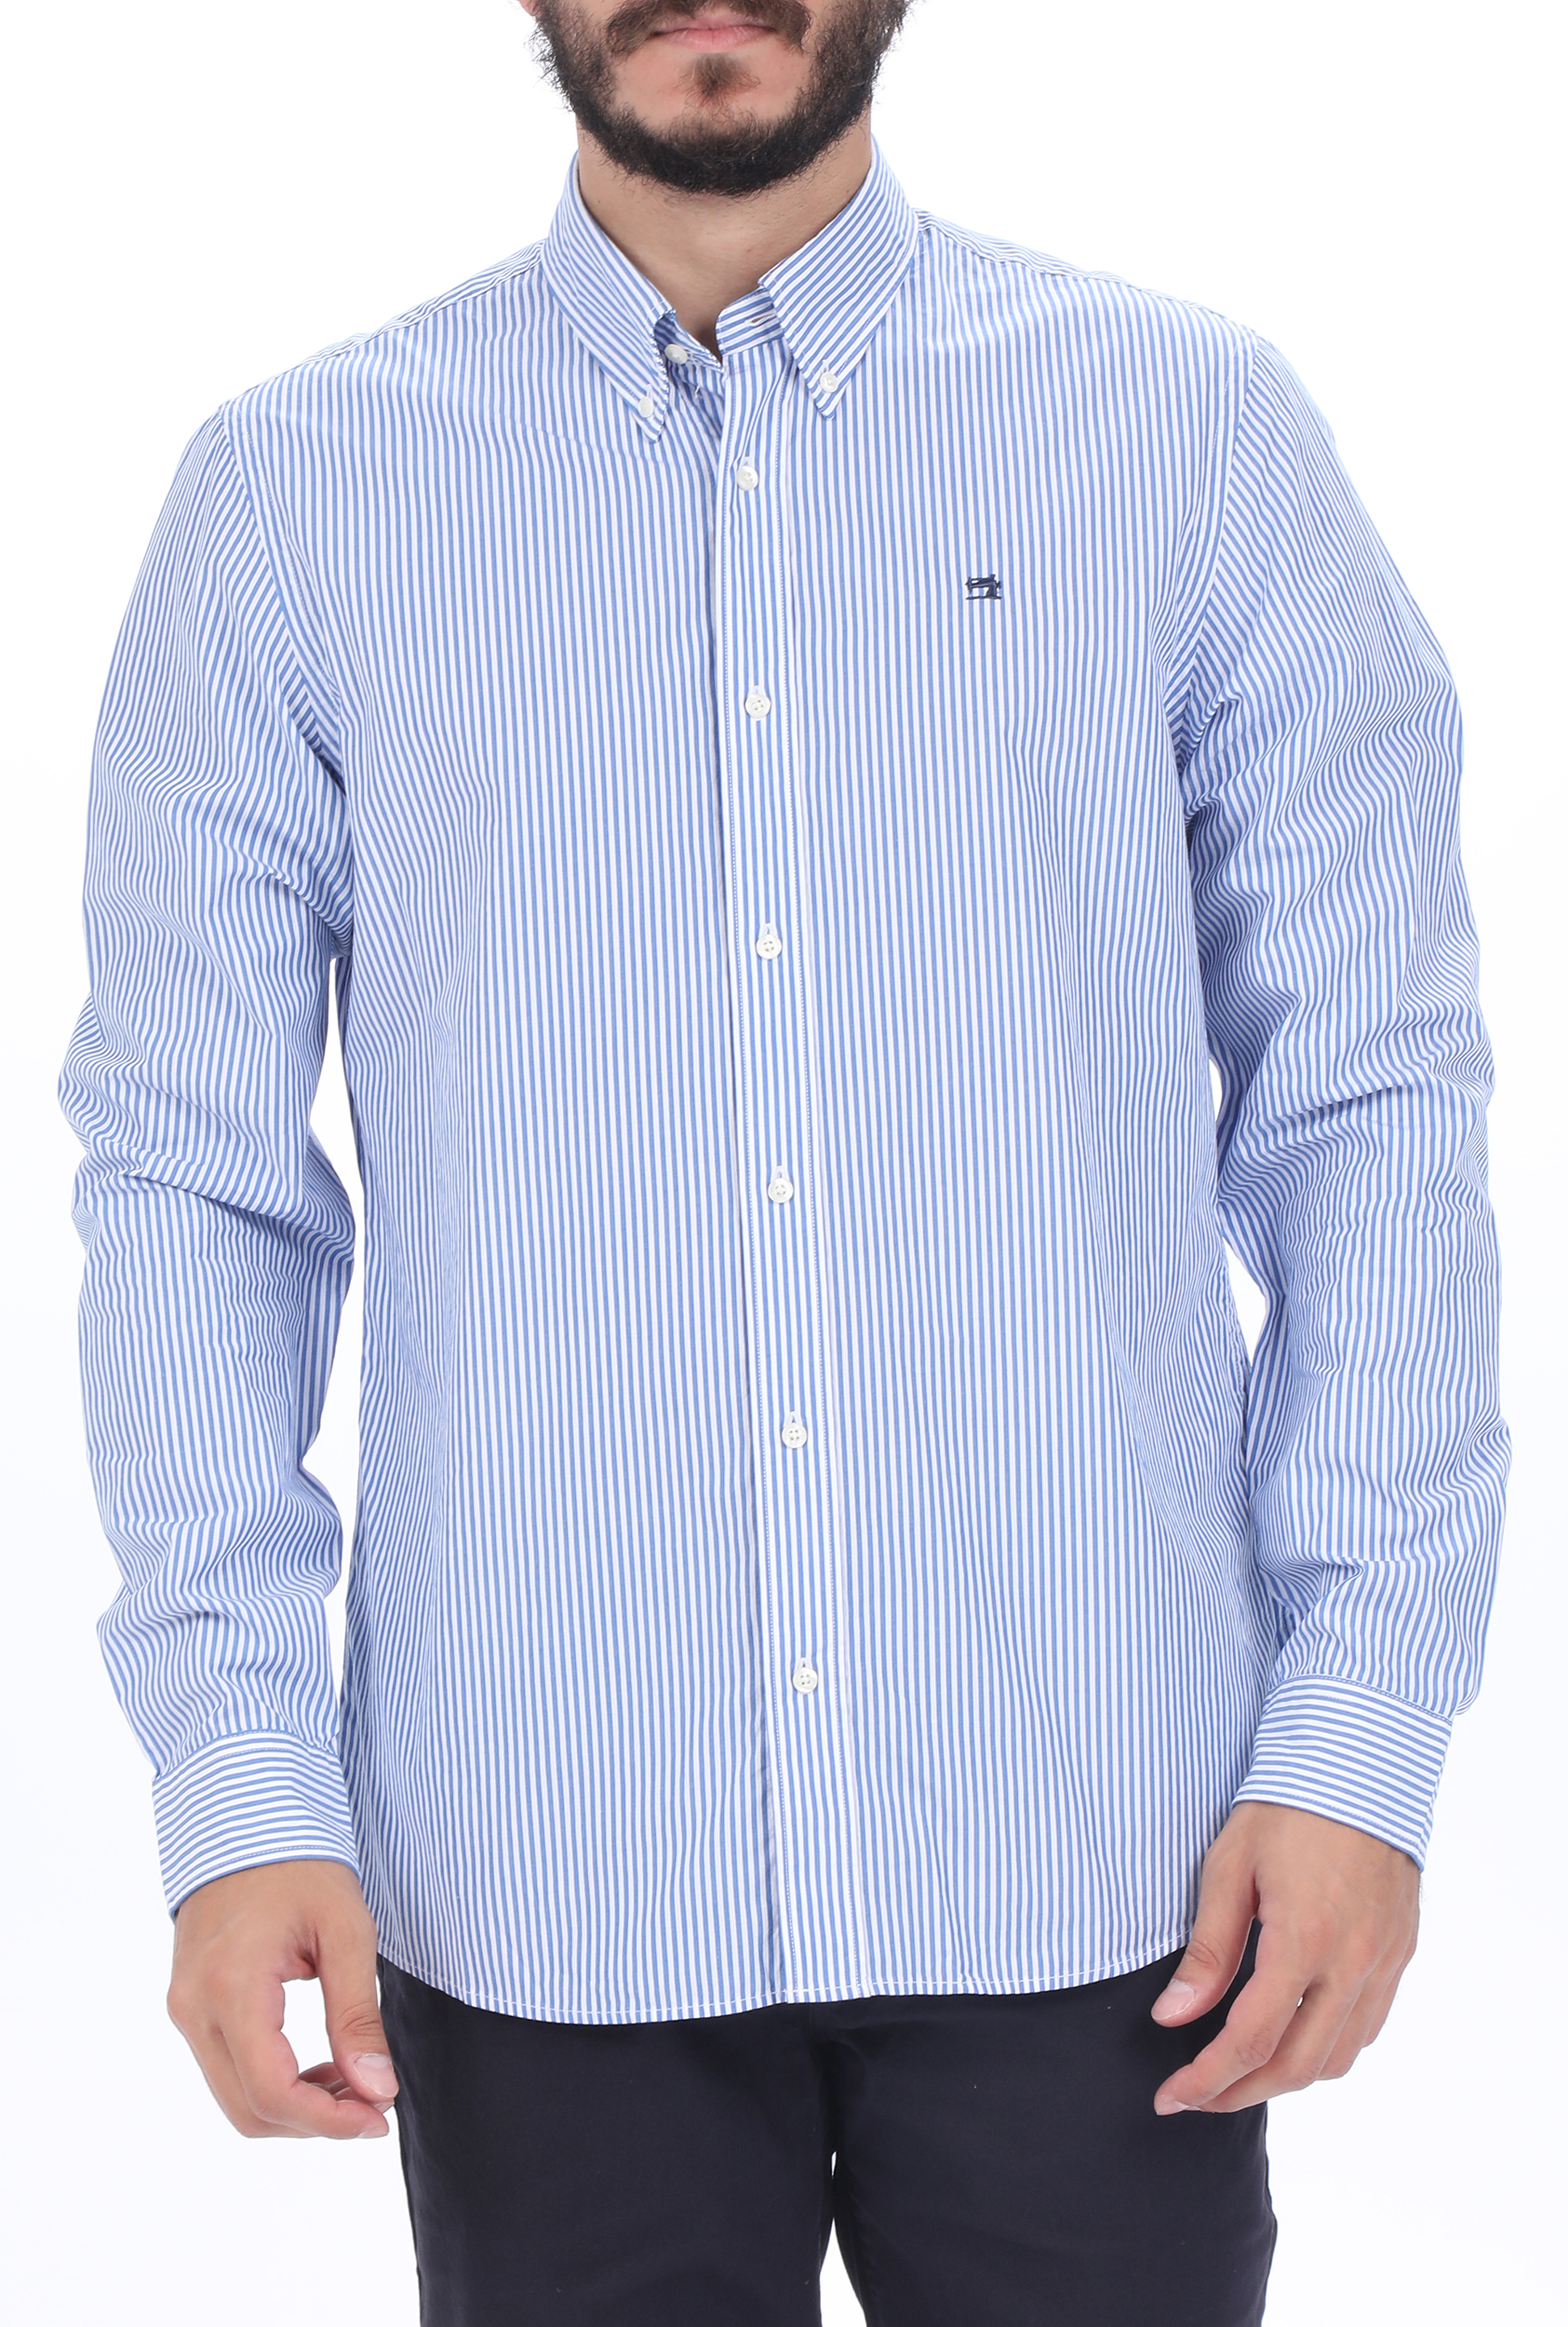 Ανδρικά/Ρούχα/Πουκάμισα/Μακρυμάνικα SCOTCH & SODA - Ανδρικό πουκάμισο SCOTCH & SODA NOS Crispy poplin relaxed λευκό μπλε